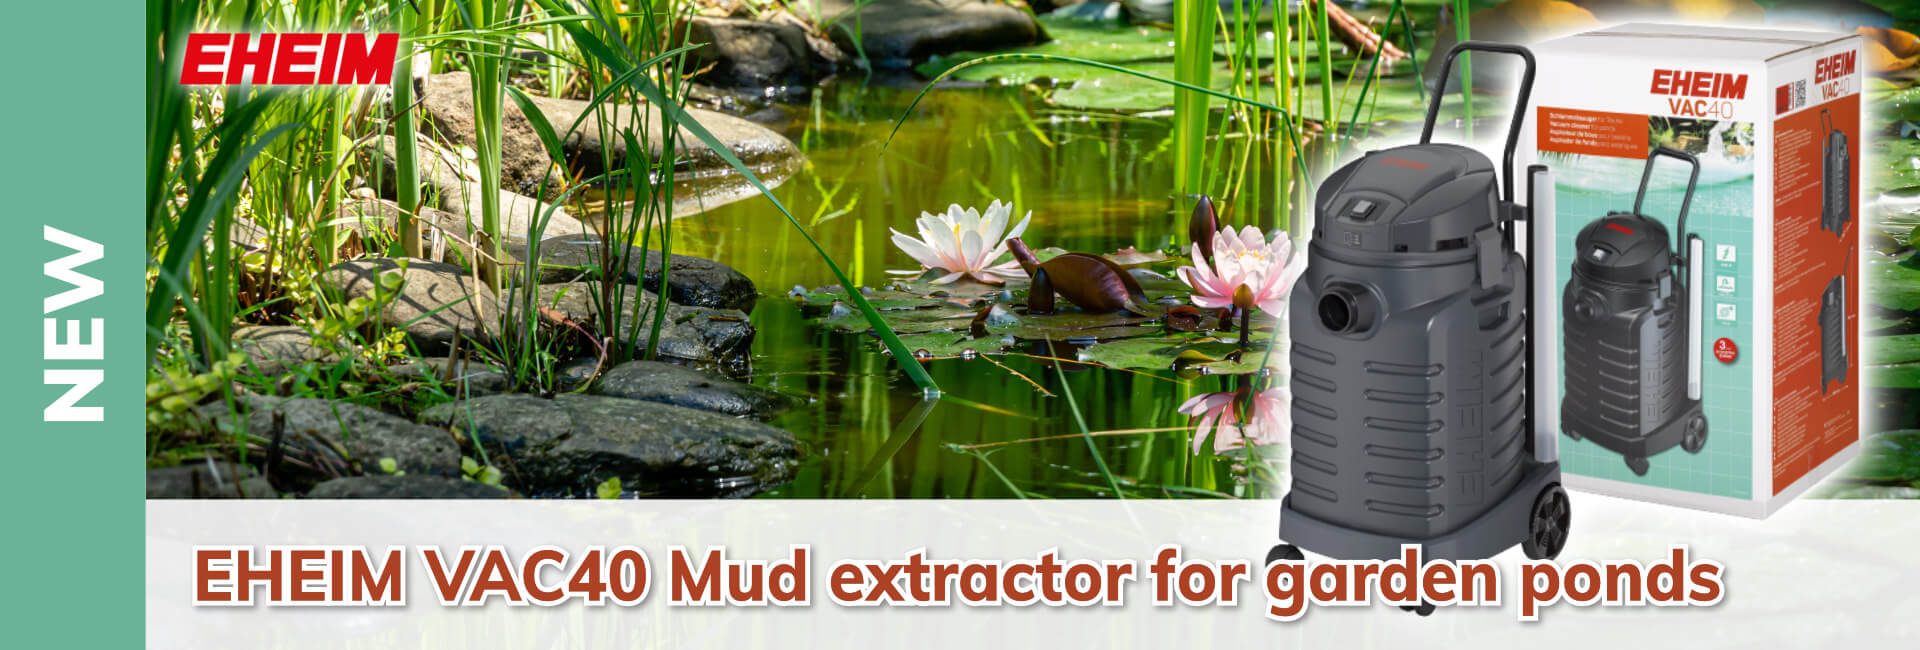 EHEIM VAC40 Mud extractor for garden ponds